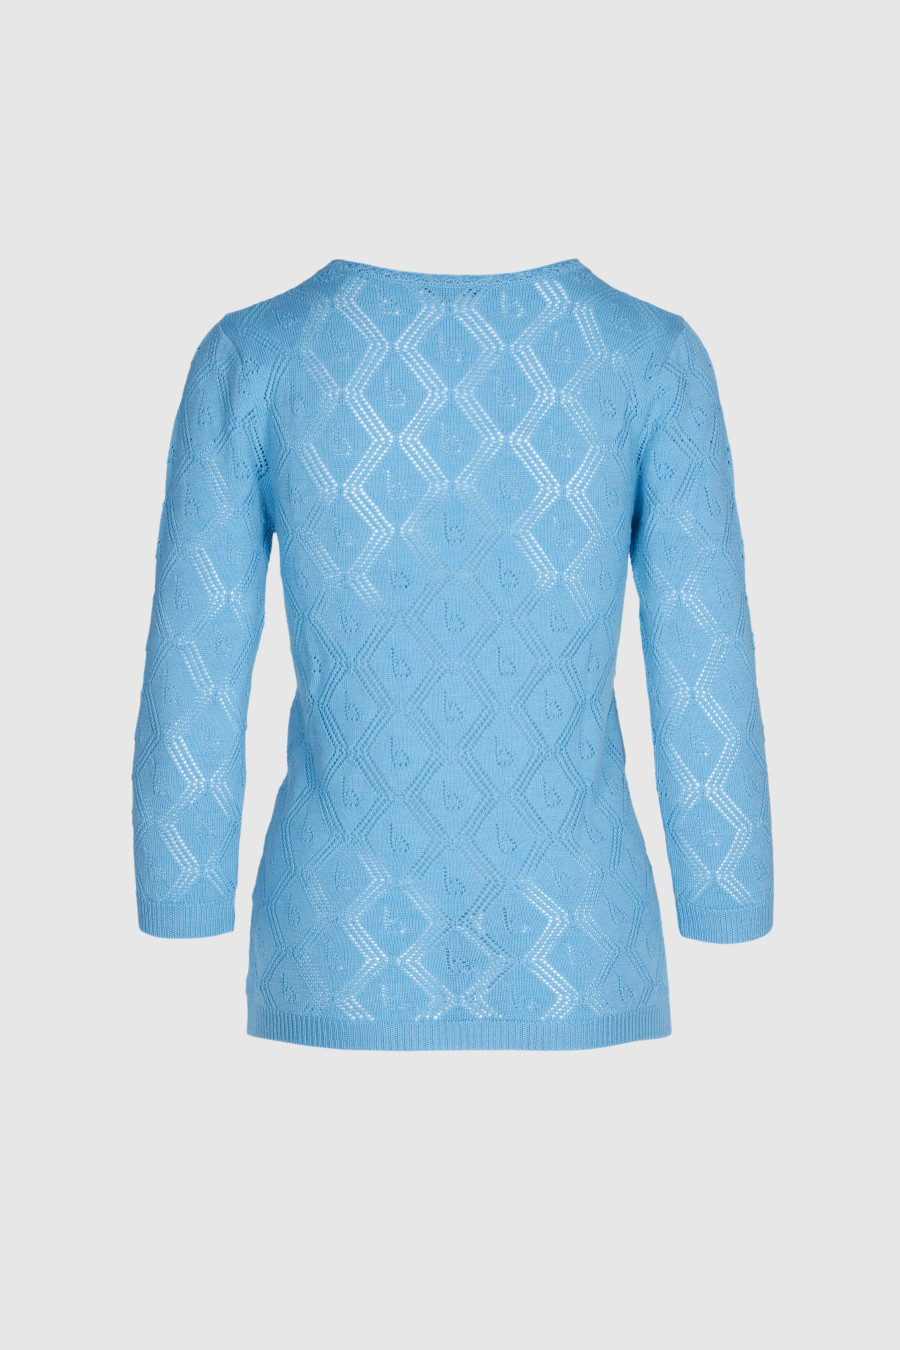 Pullover gestrickt in blau, mit Muster und verkürzten Arm, Merinowolle, Rundhals, blau, uni, transparent